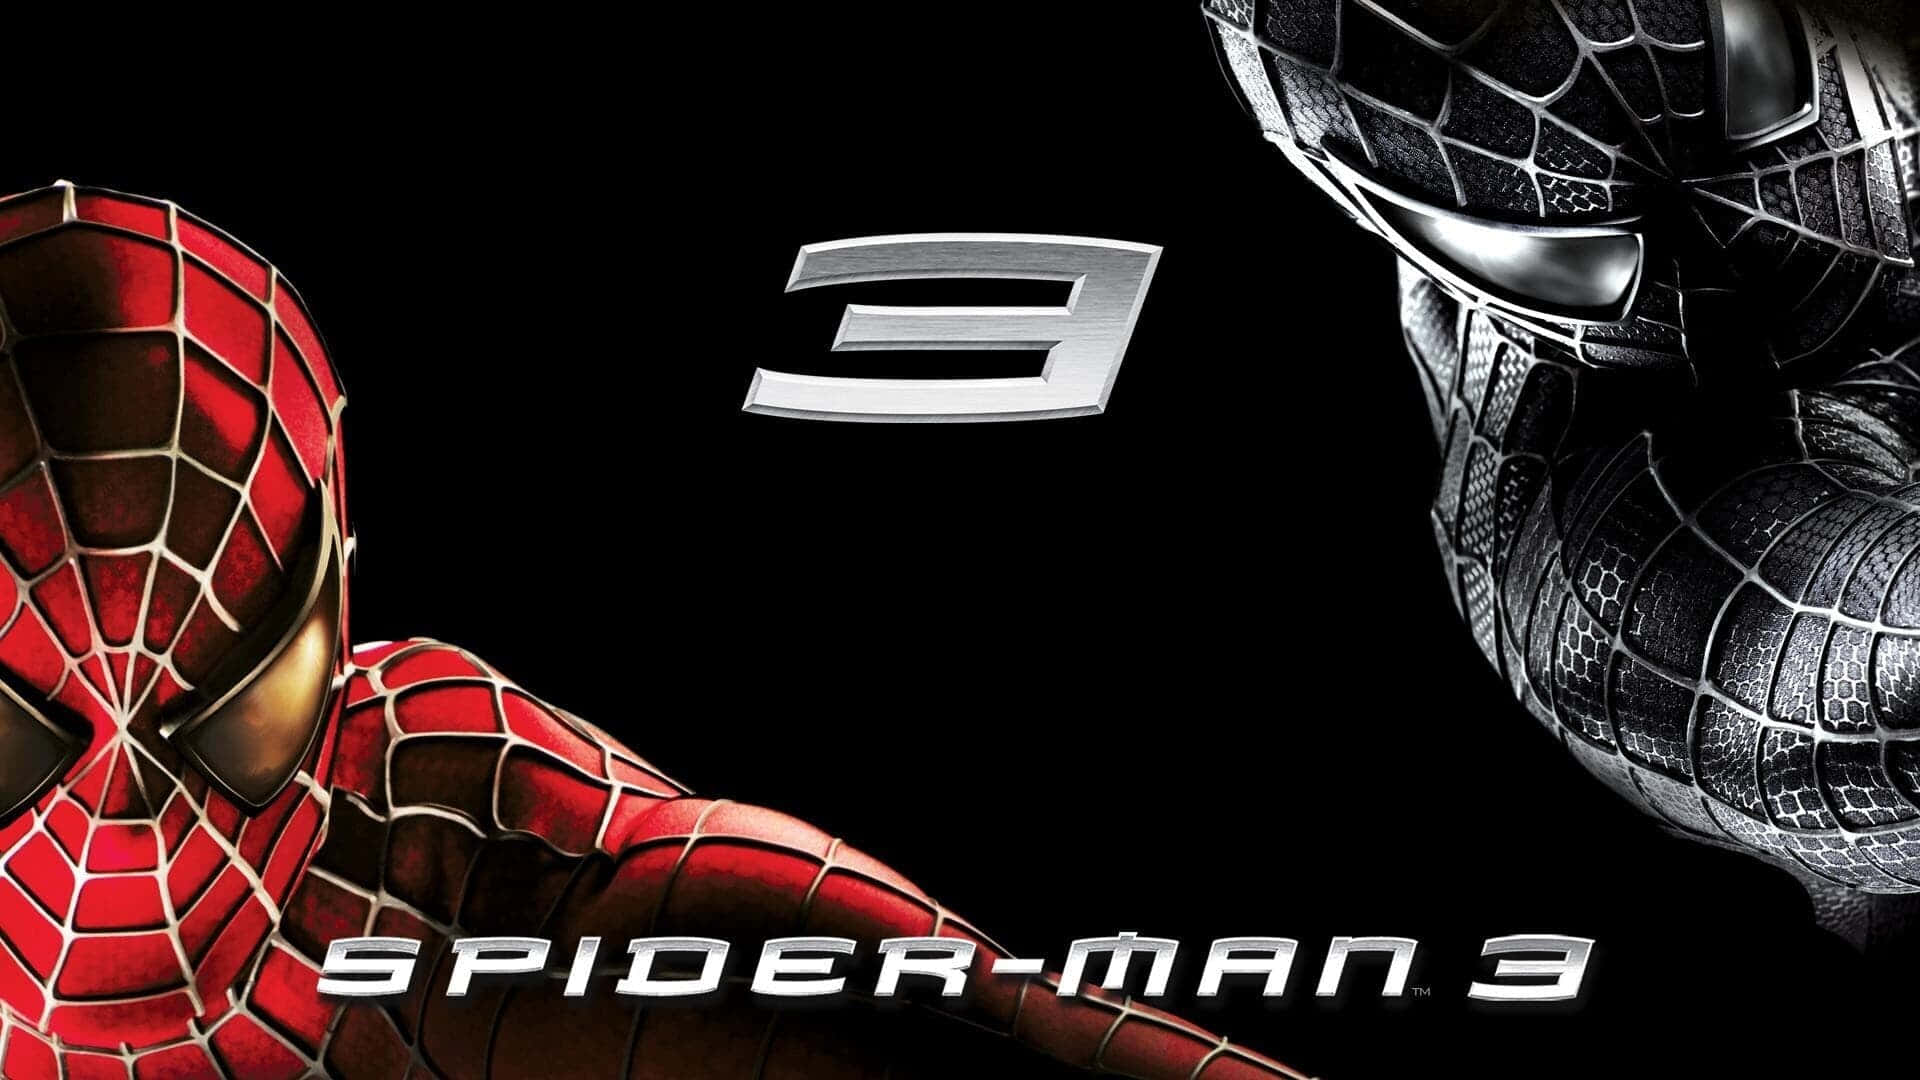 Spider-Man 3 - A Hero's Dilemma Wallpaper